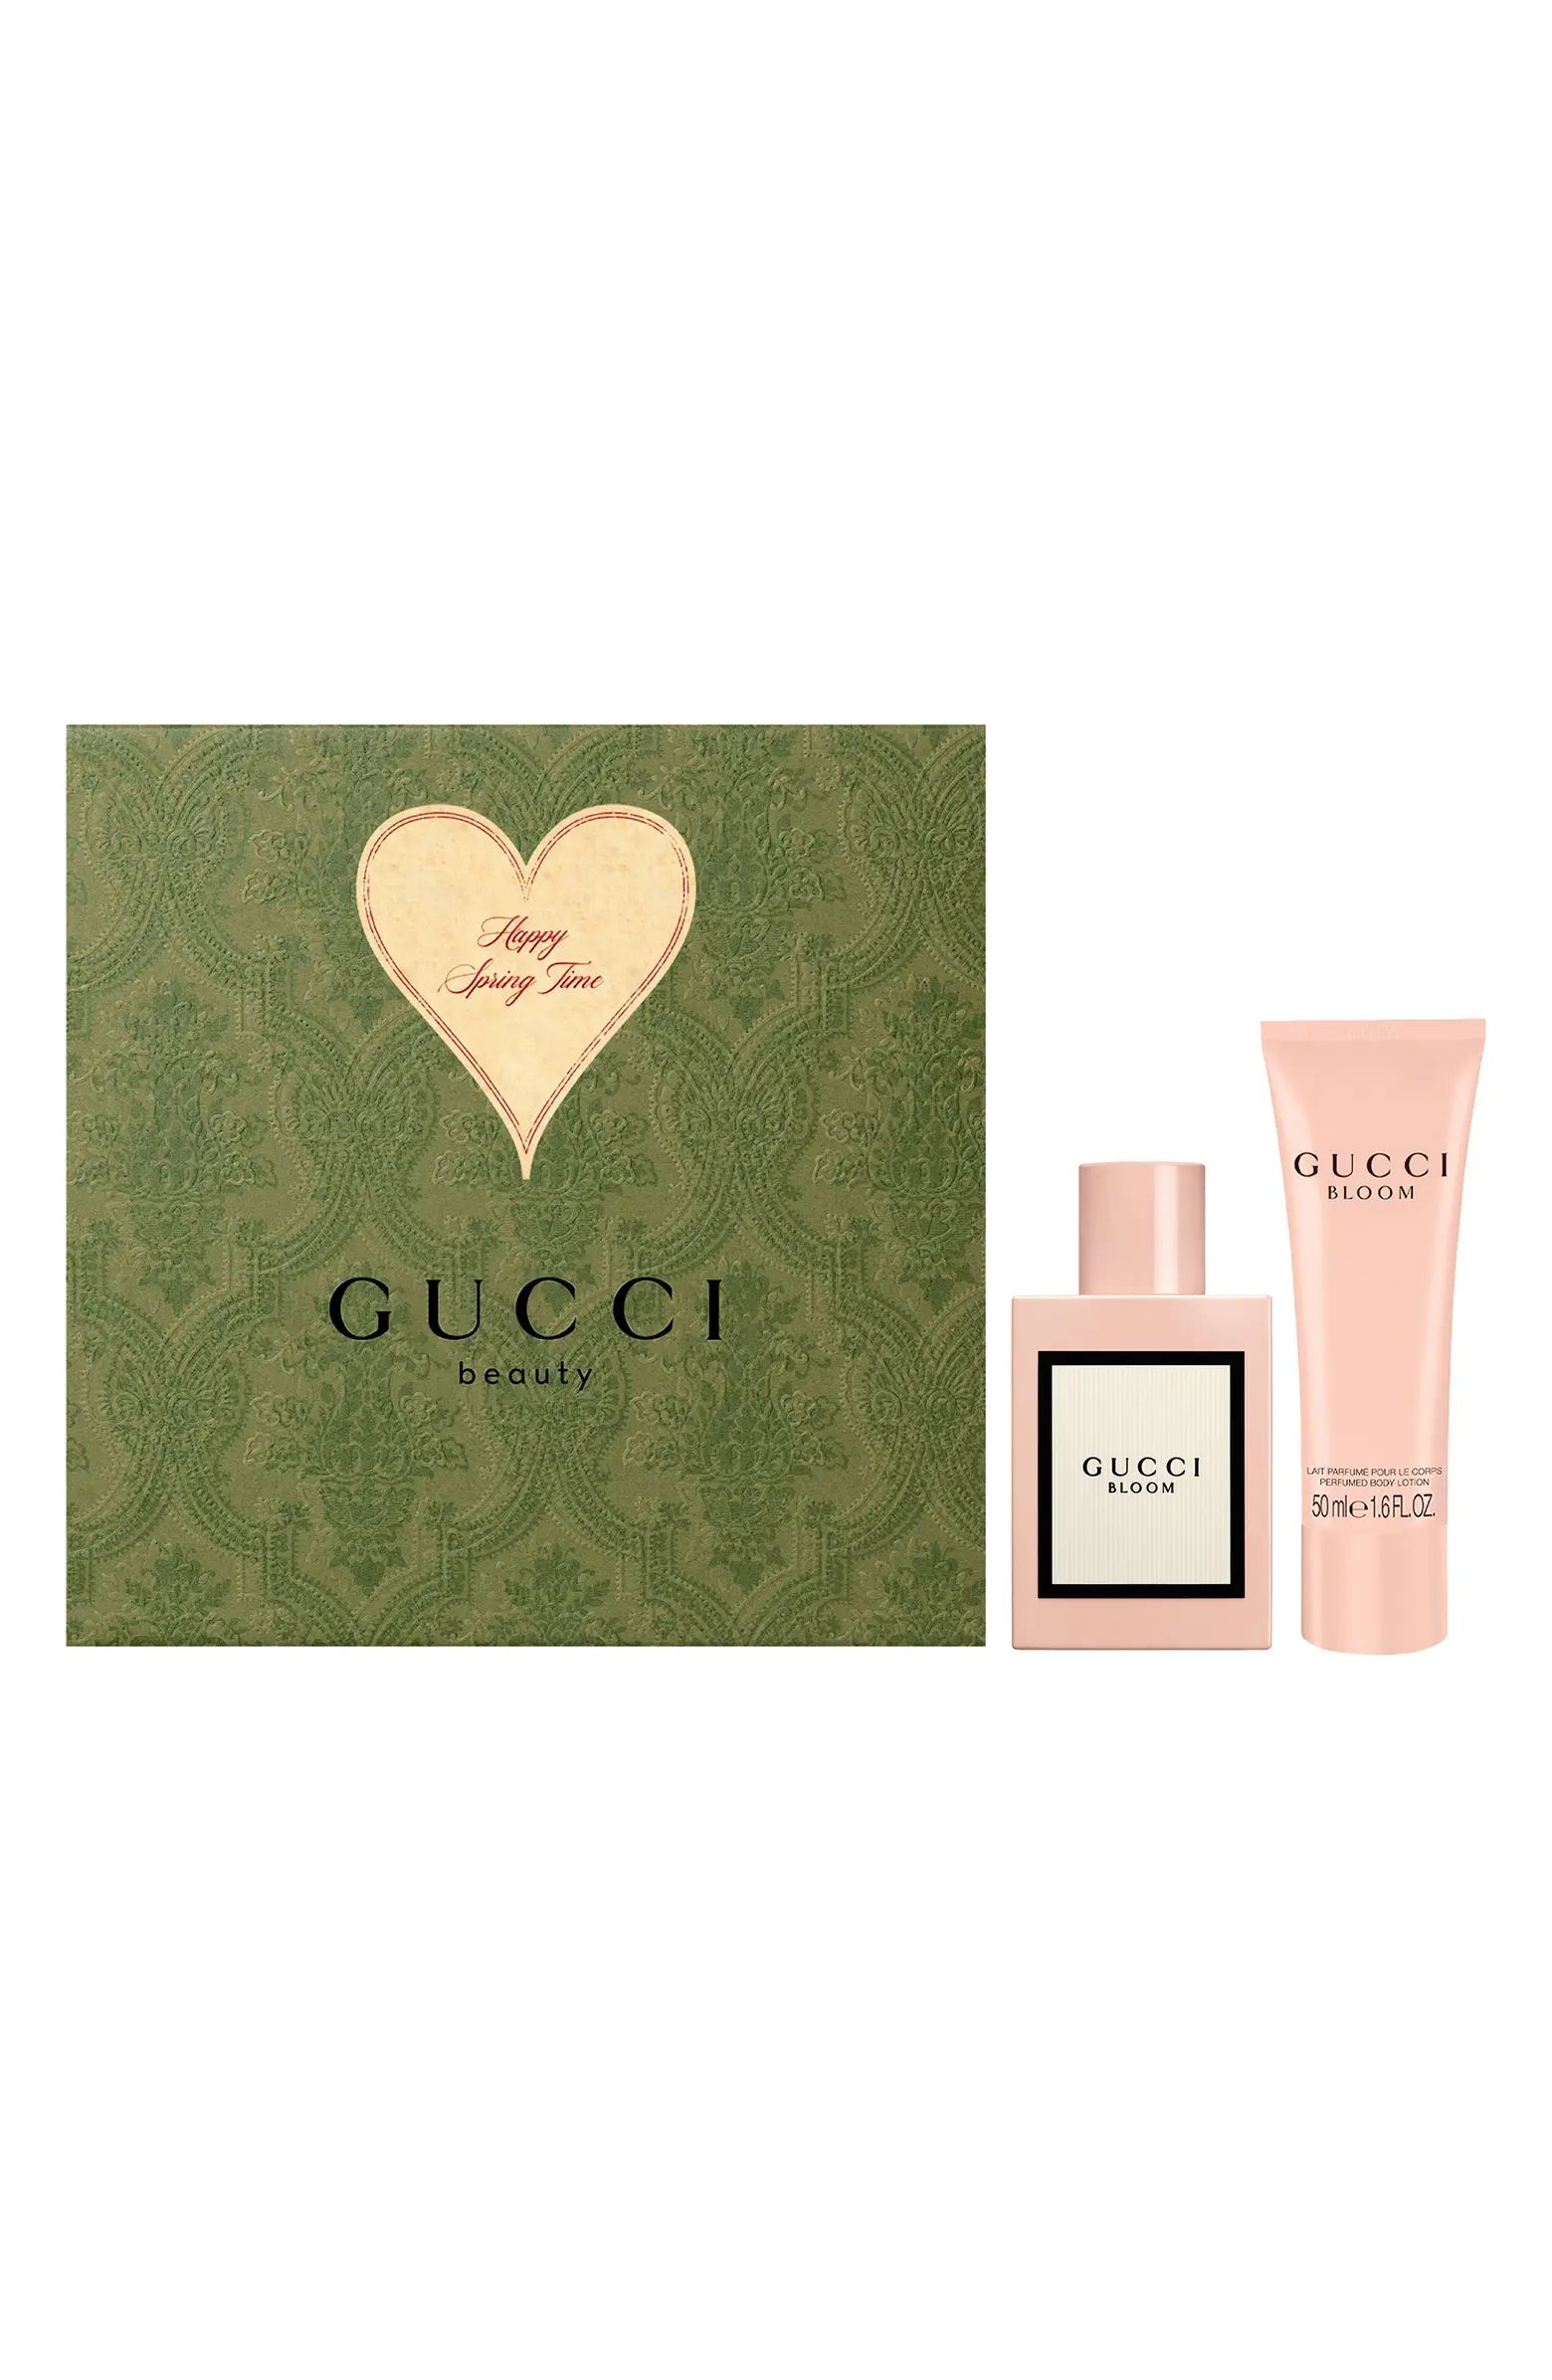 Bloom Eau de Parfum Set $138 Value | Nordstrom